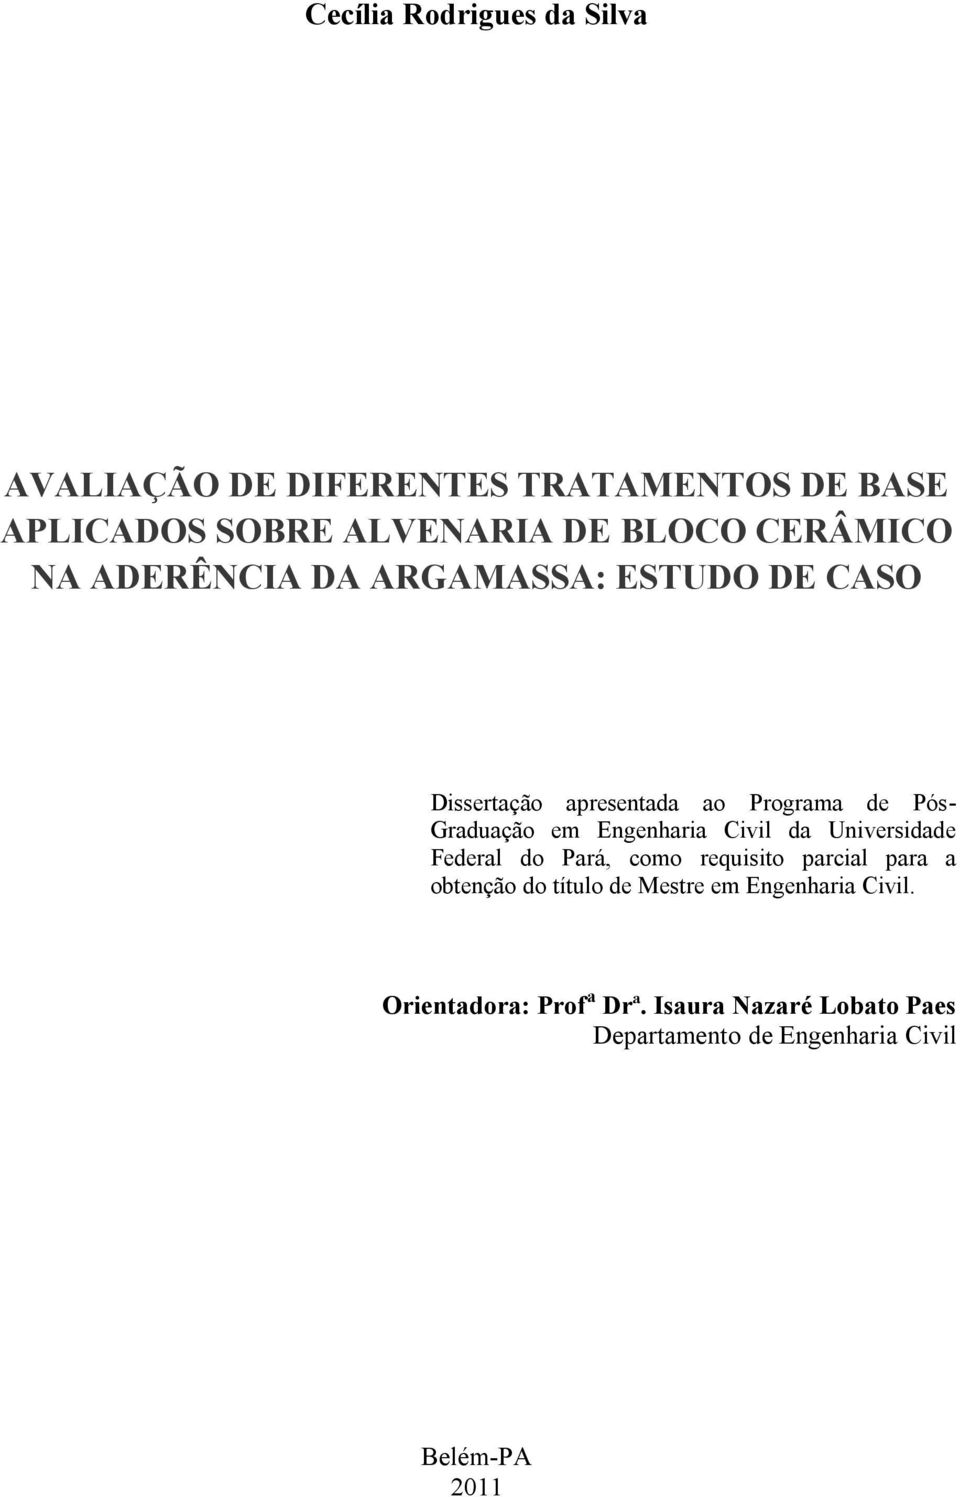 Engenharia Civil da Universidade Federal do Pará, como requisito parcial para a obtenção do título de Mestre